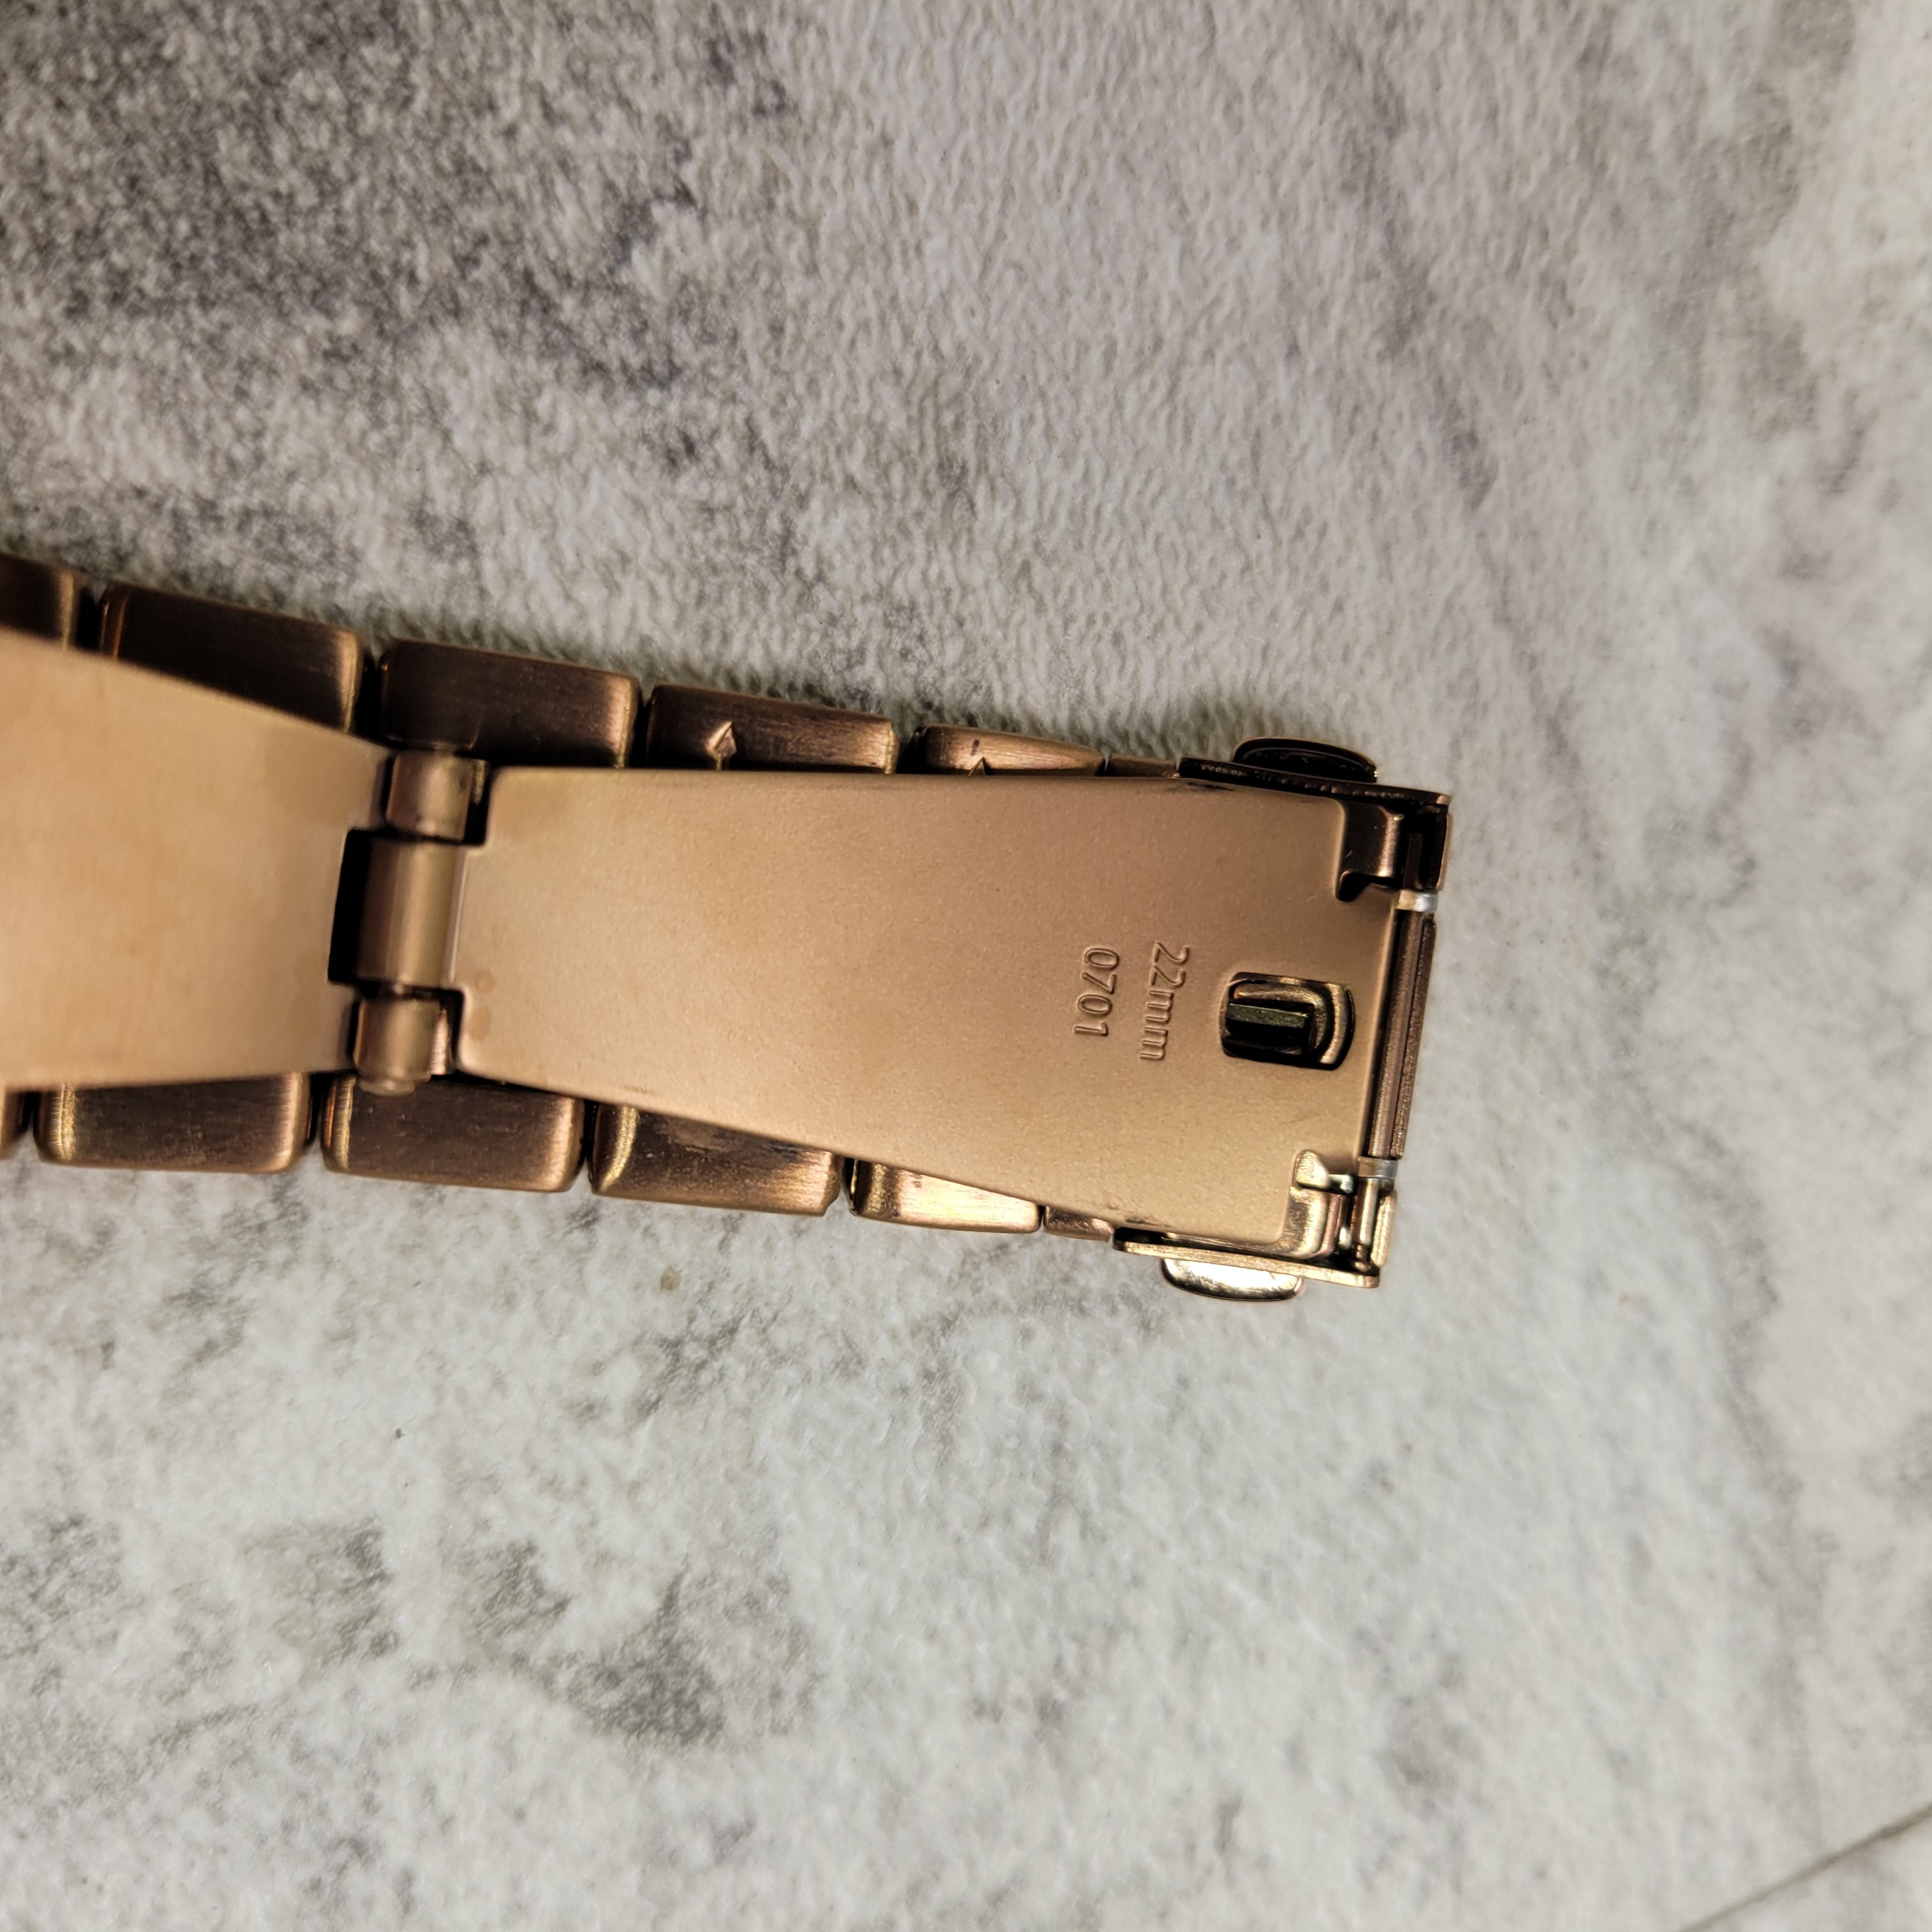 Fossil FTW6035 Gen 5 Julianna Touchscreen Smartwatch in Rose Gold (7680576225518)